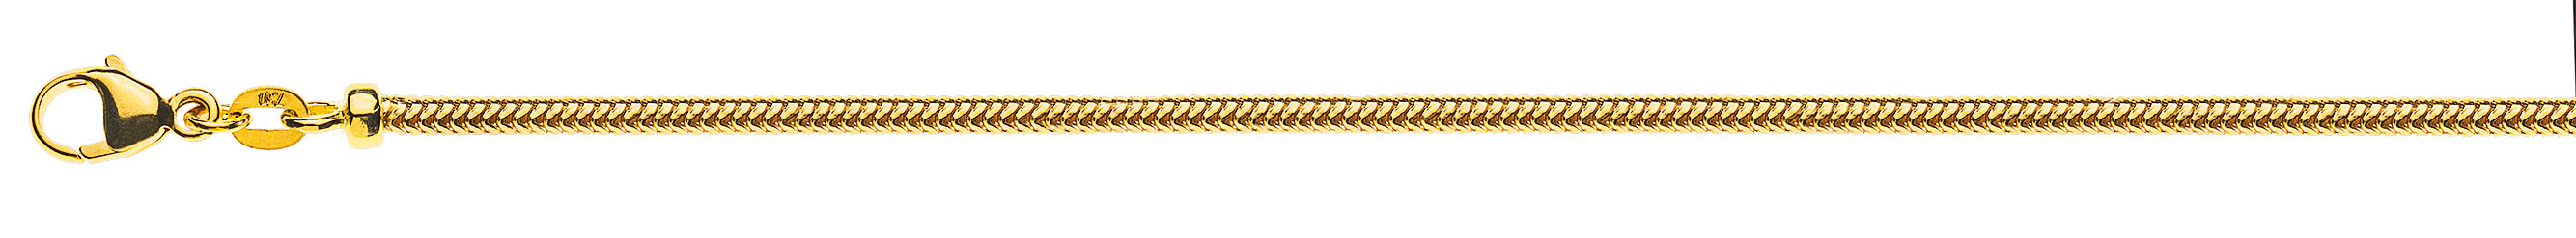 AURONOS Prestige Collier en or jaune 18 carats avec serpent 40cm 2.4mm